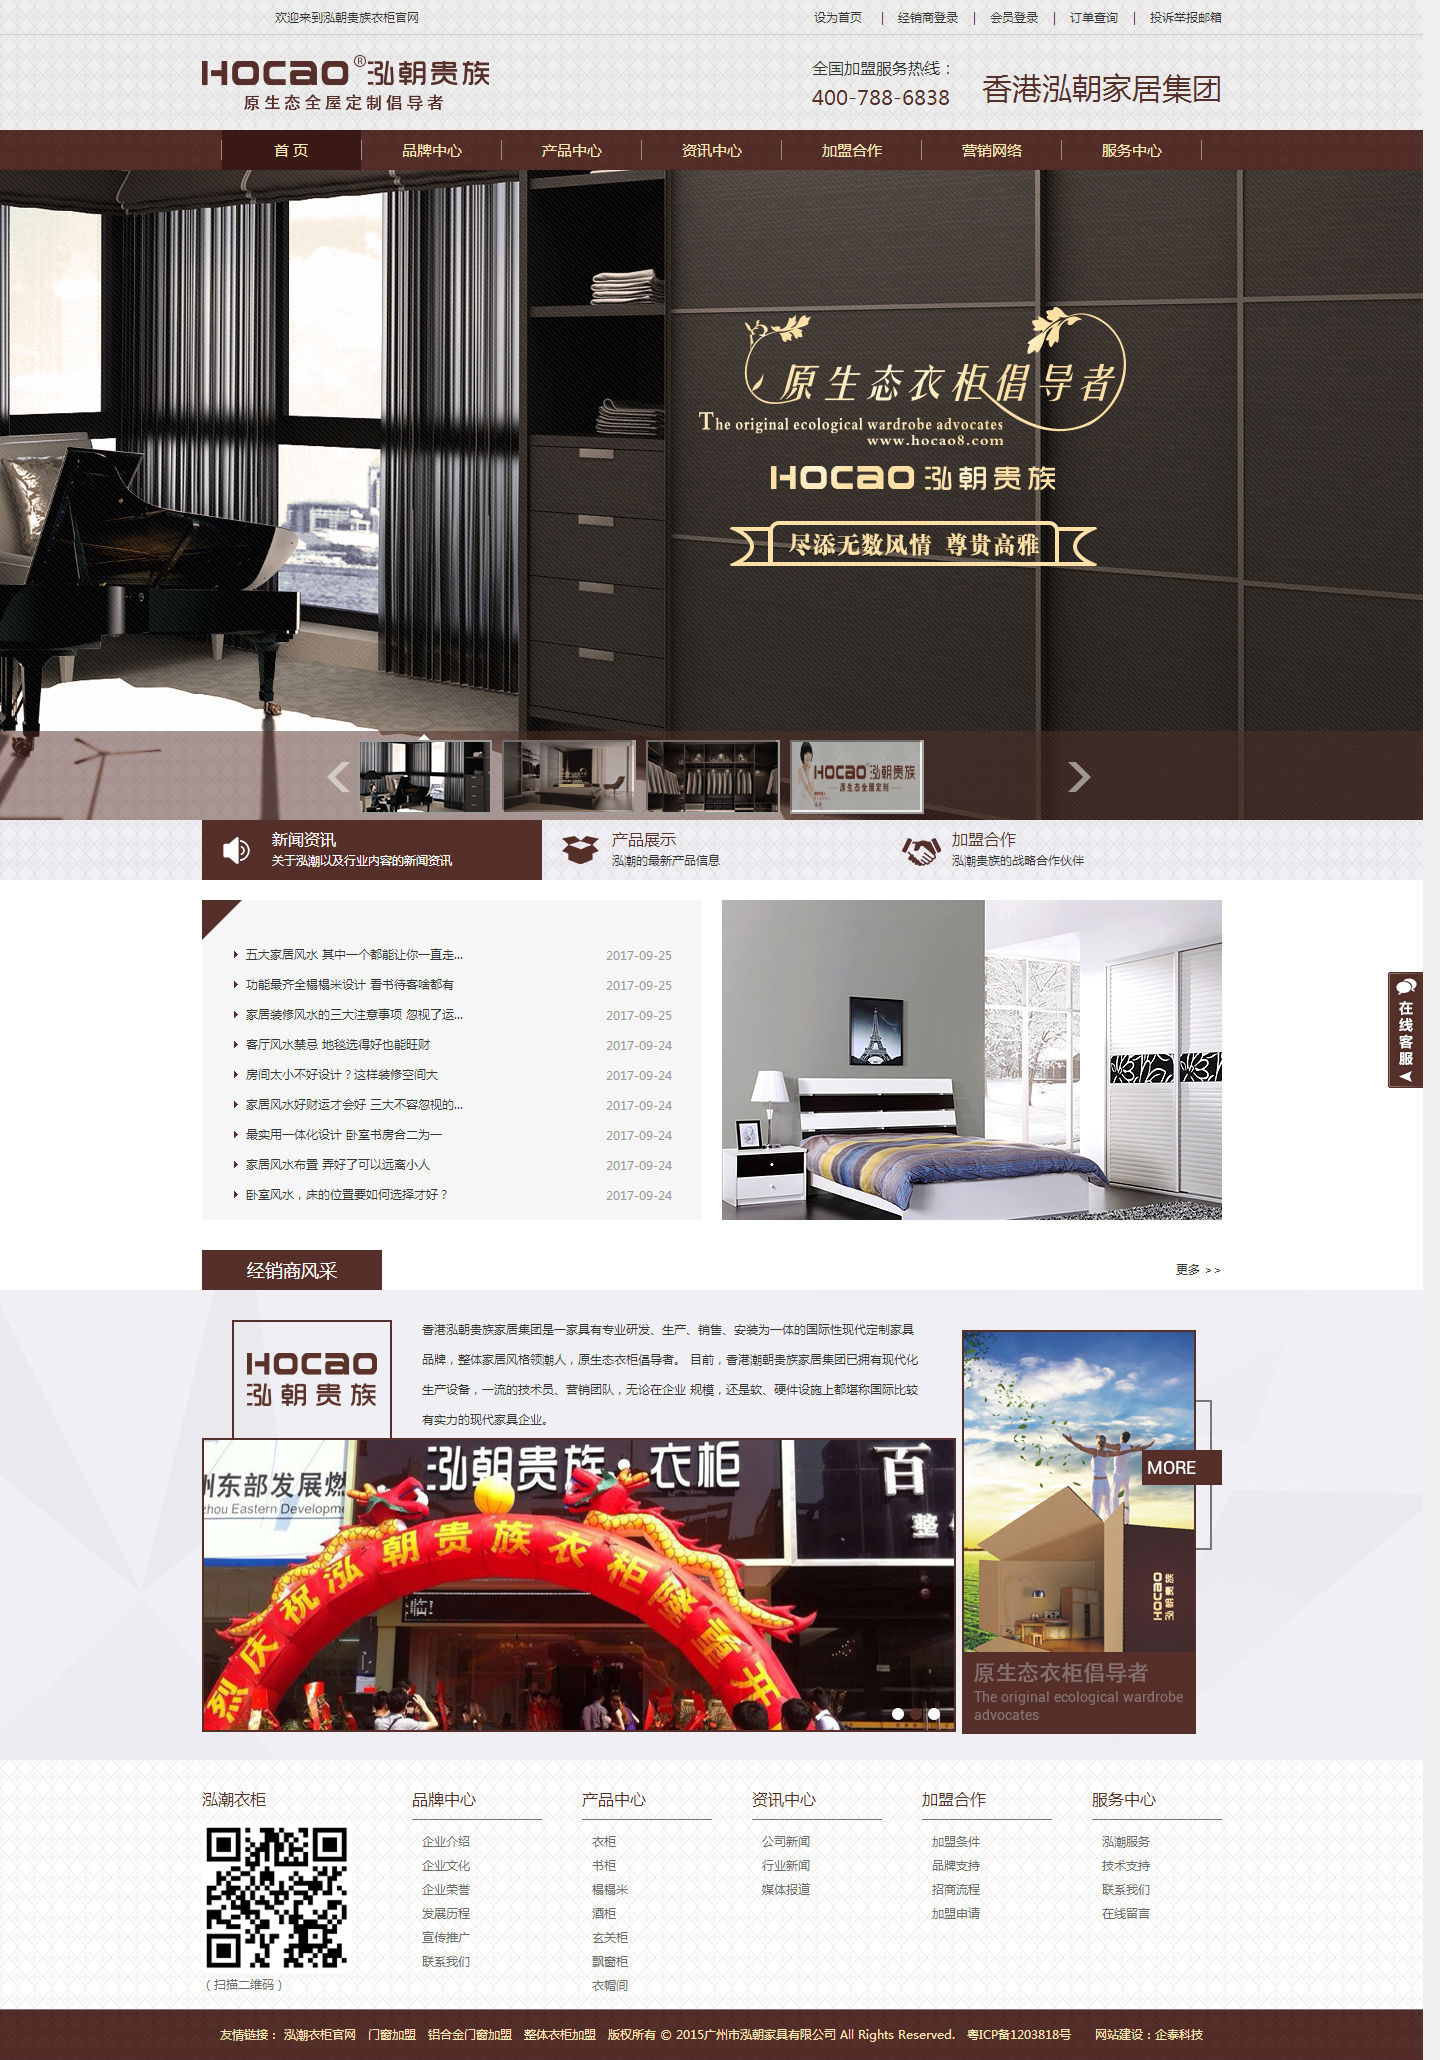 企业网站建设 小程序 小程序商城 名片小程序 网站运营 广州做网站 企泰科技 让电子商务更简单 